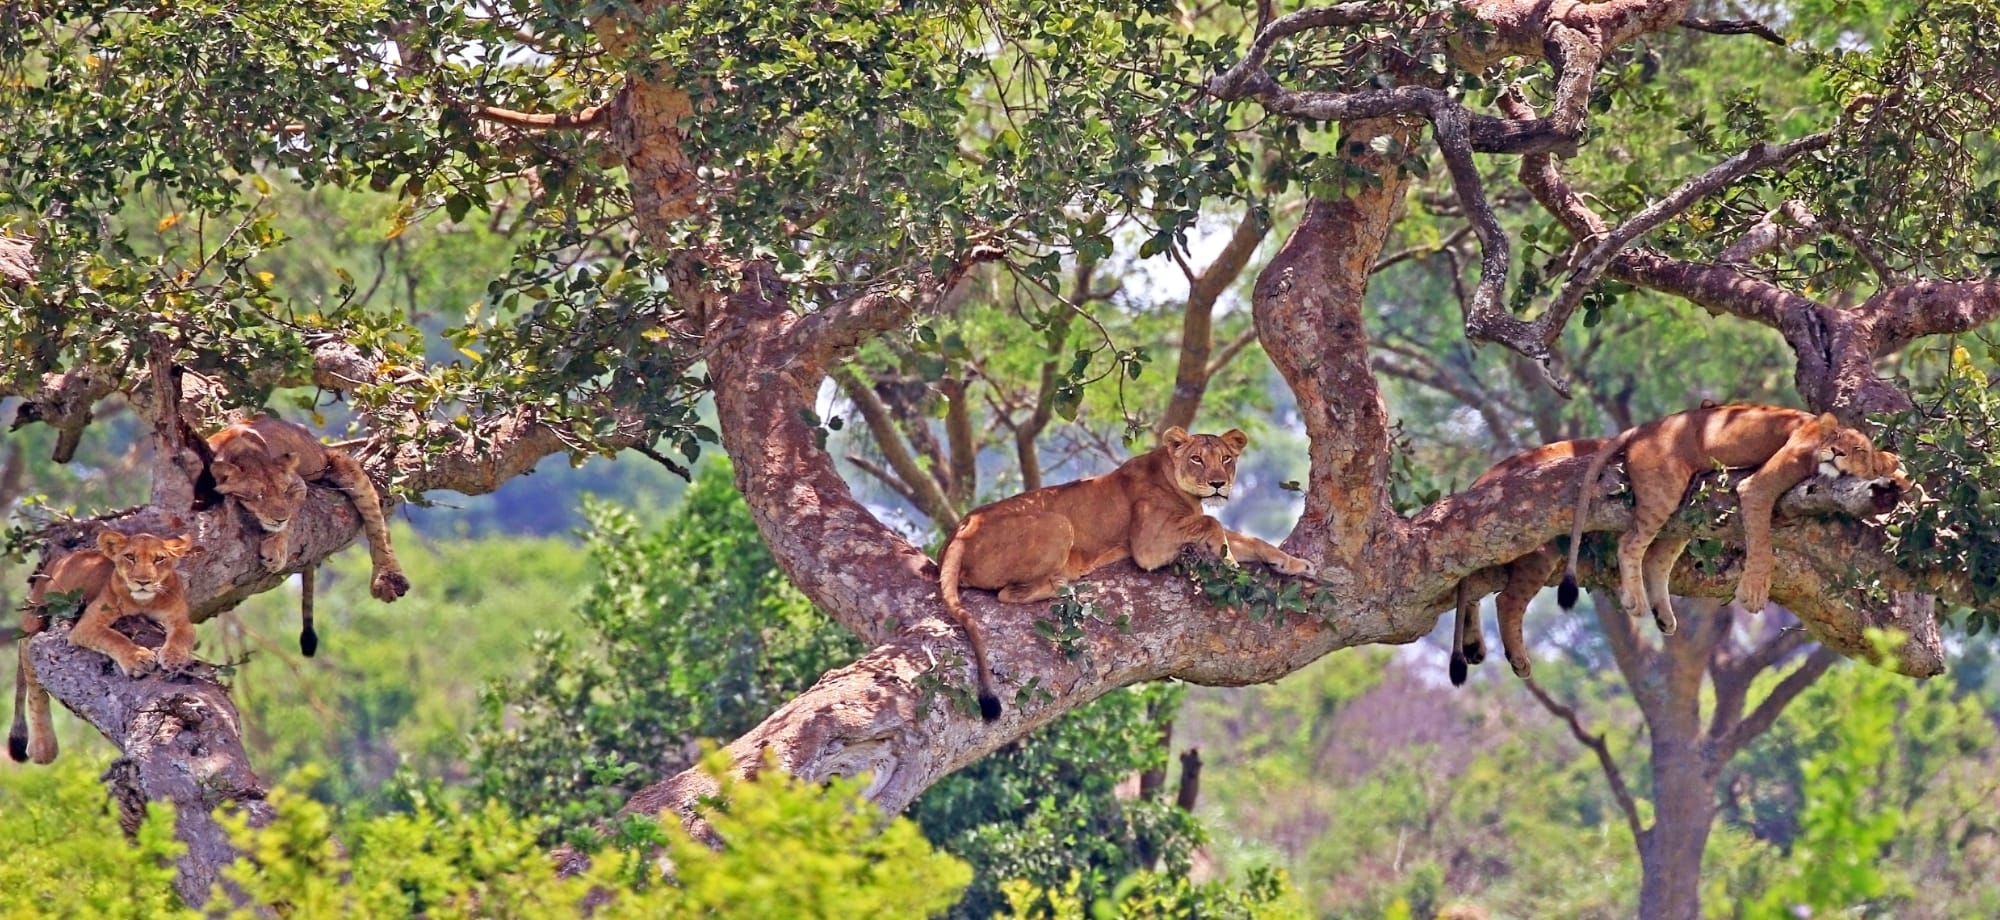 Uganda_Tree_climbing_lions_4_vdripc